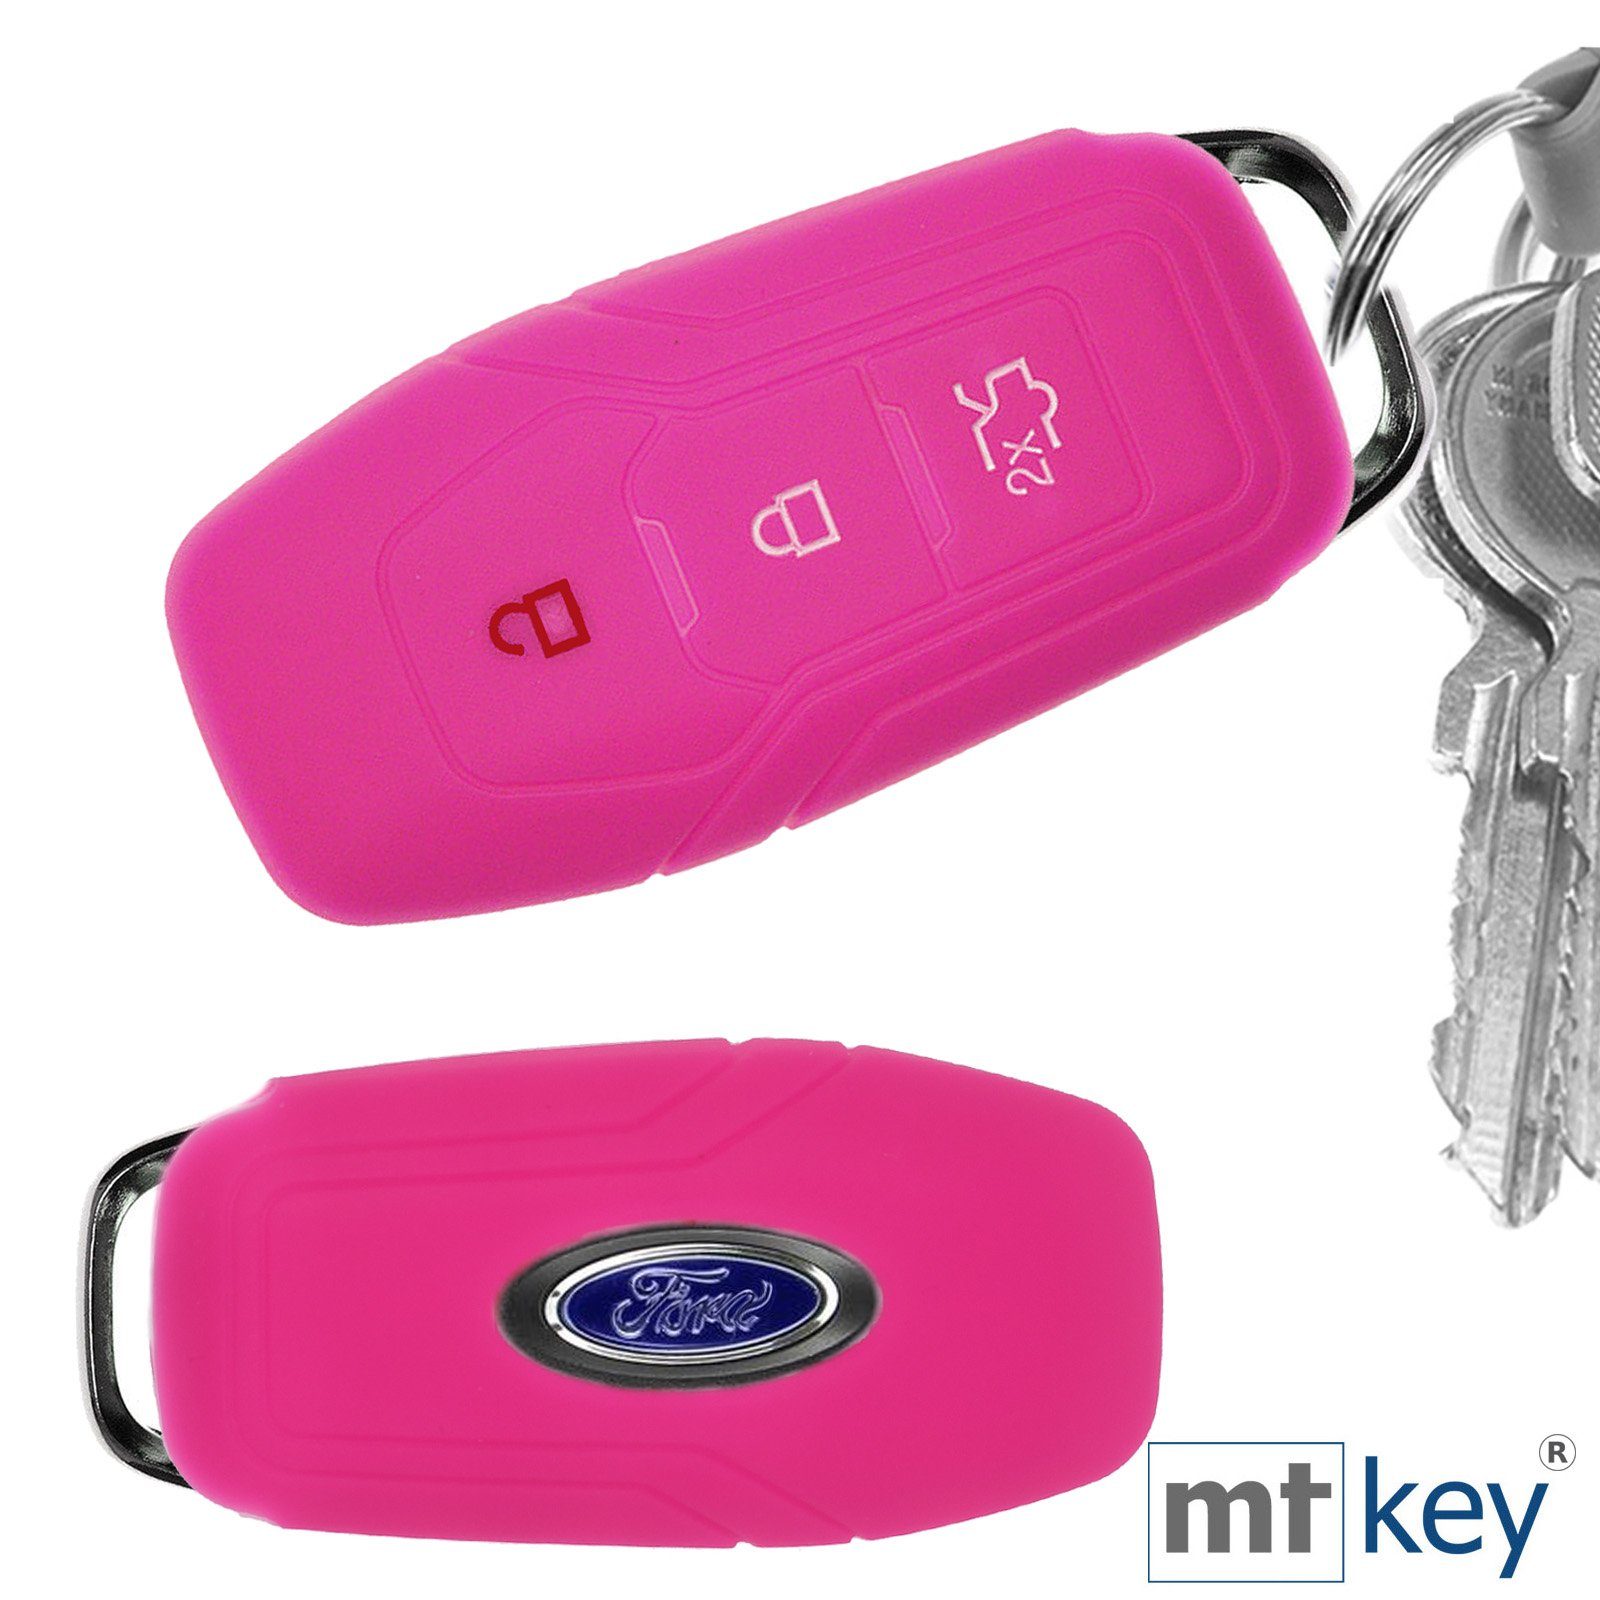 Kuga Ford Mondeo Galaxy Silikon Fiesta Autoschlüssel Turnier mt-key 3 V Focus Pink, Tasten Mustang Softcase für Schlüsseltasche Schutzhülle